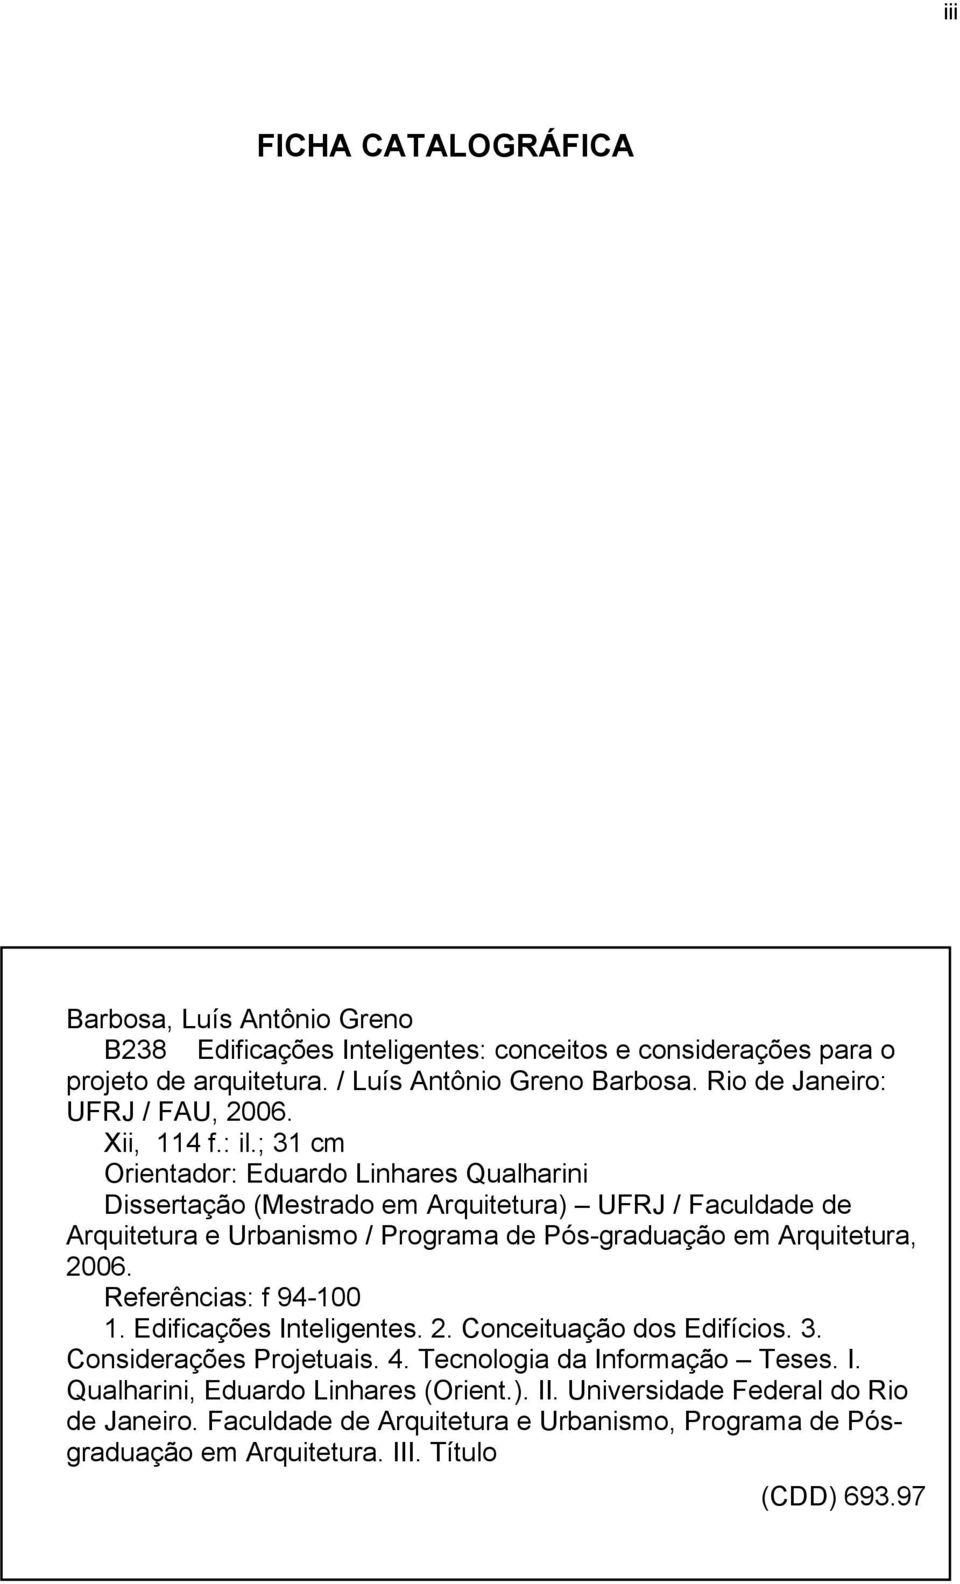 ; 31 cm Orientador: Eduardo Linhares Qualharini Dissertação (Mestrado em Arquitetura) UFRJ / Faculdade de Arquitetura e Urbanismo / Programa de Pós-graduação em Arquitetura, 2006.